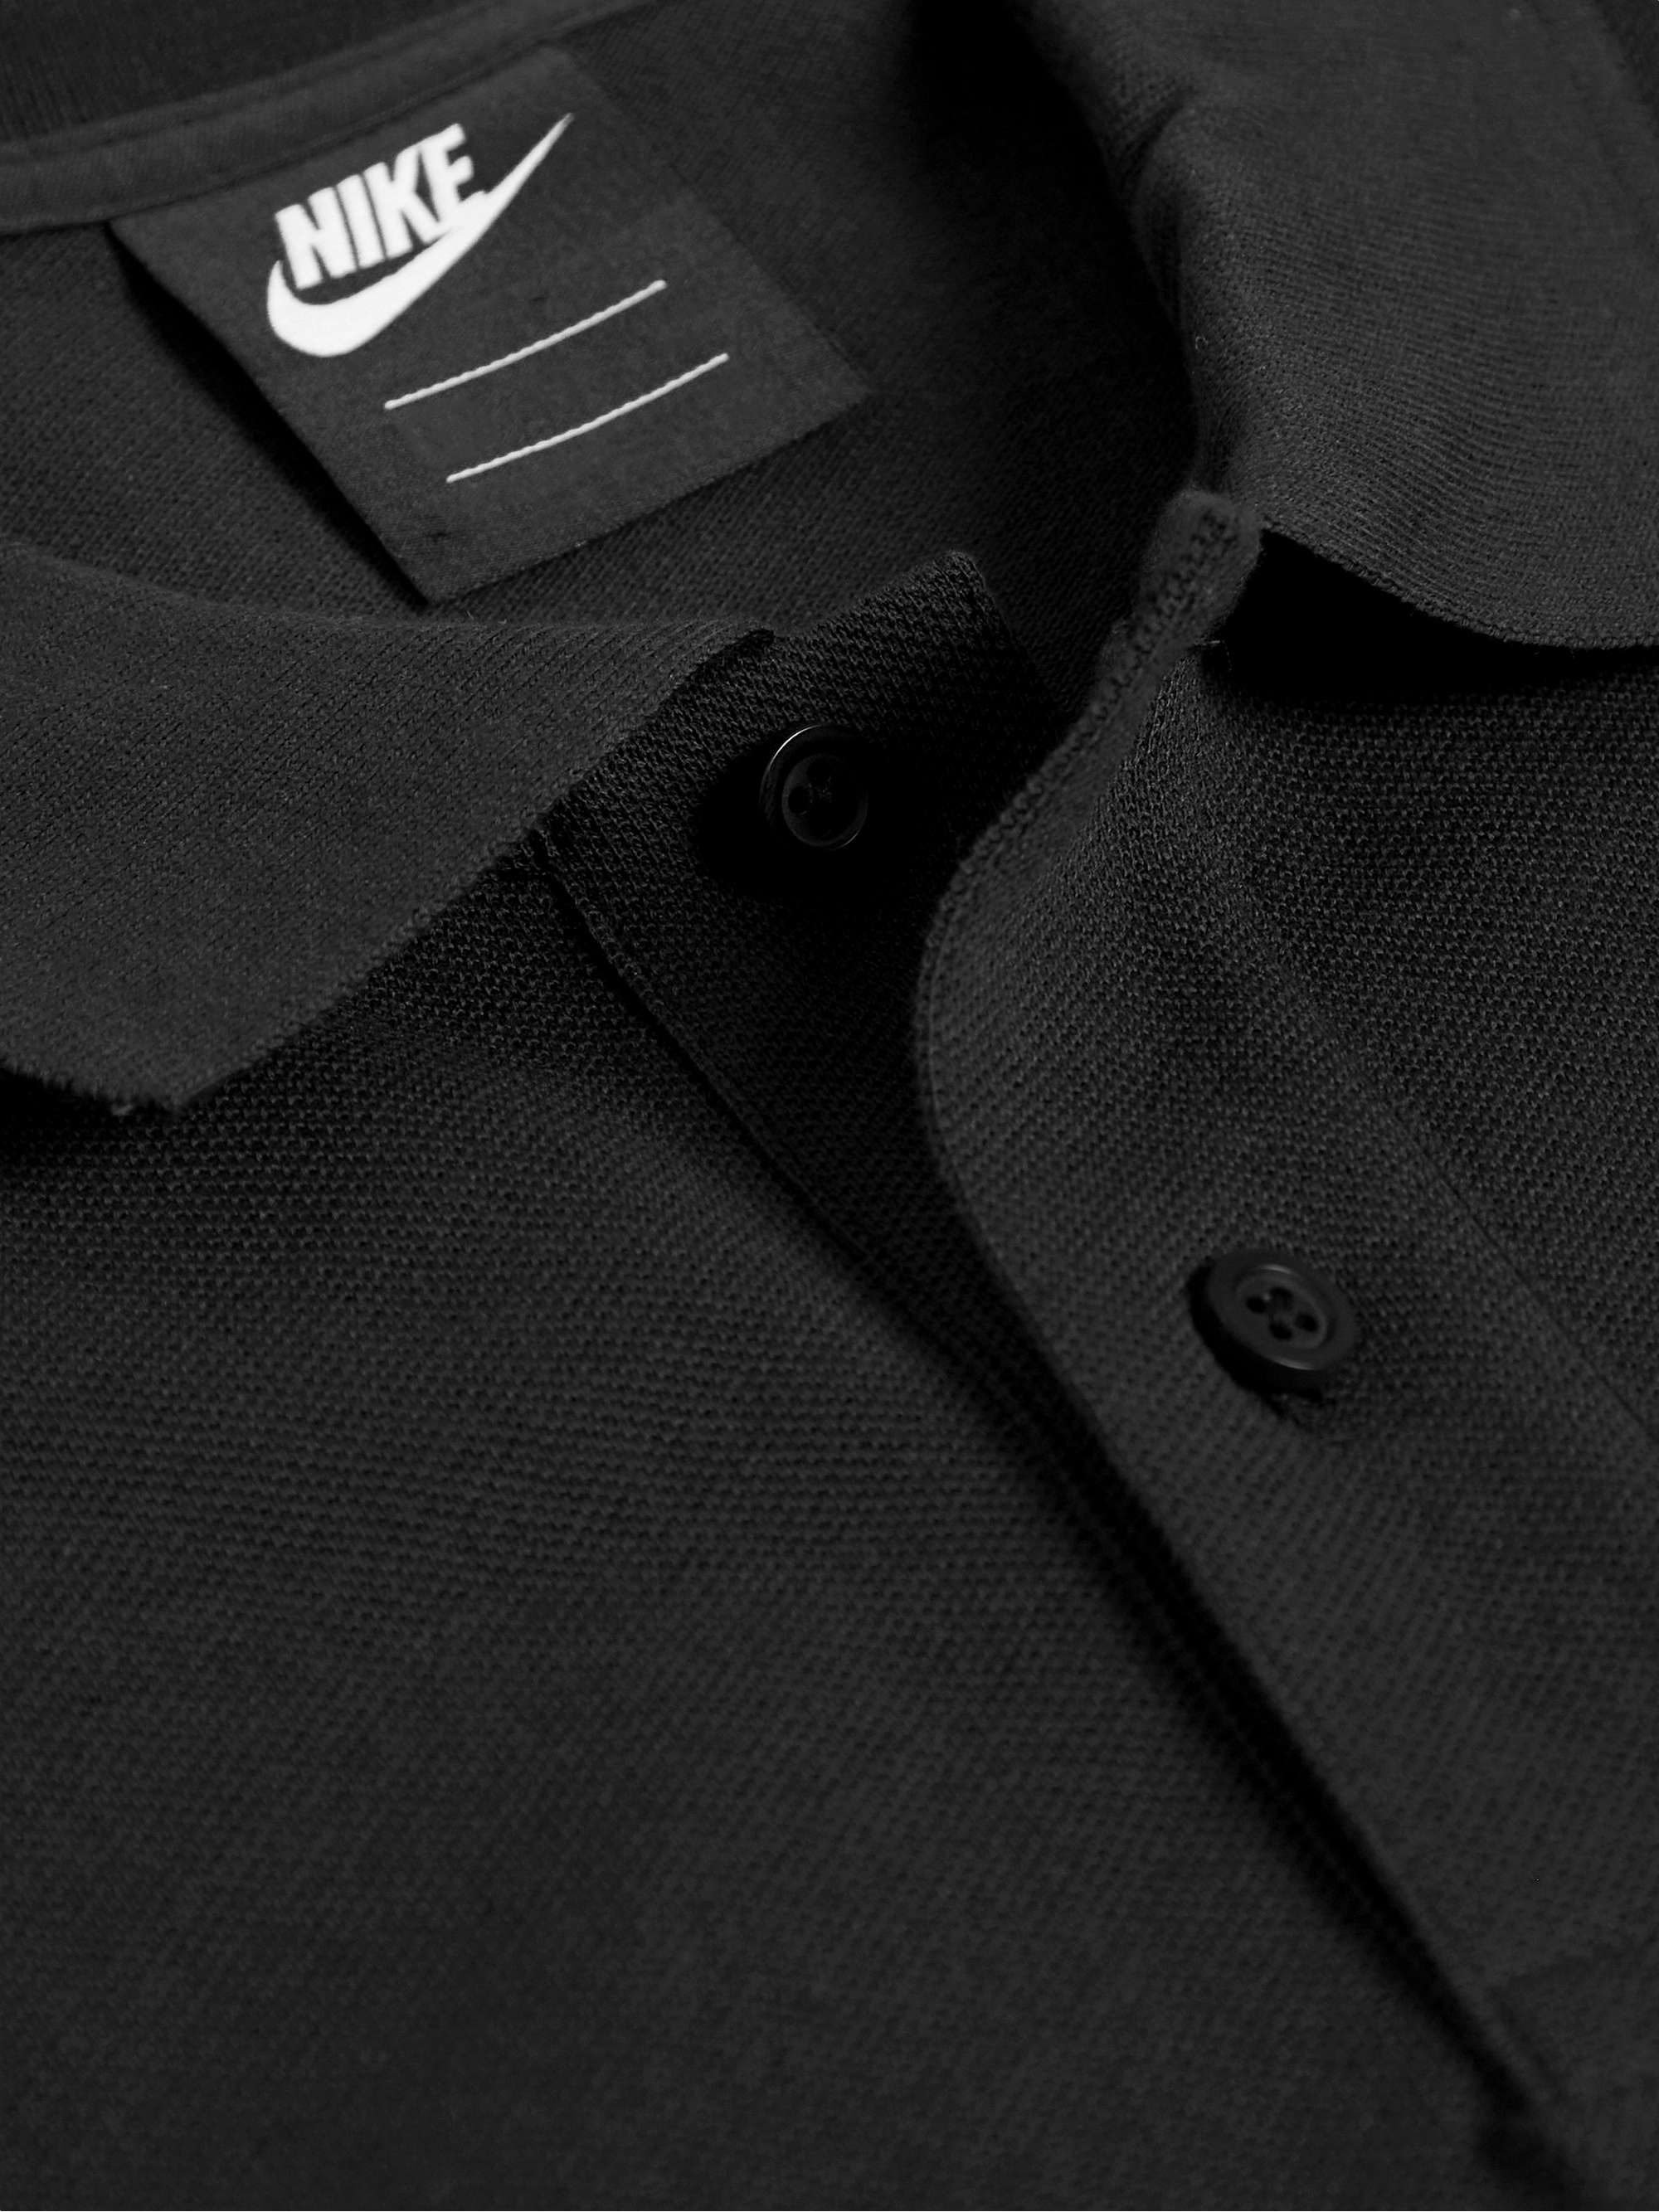 NIKE Logo-Embroidered Cotton-Piqué Polo Shirt for Men | MR PORTER